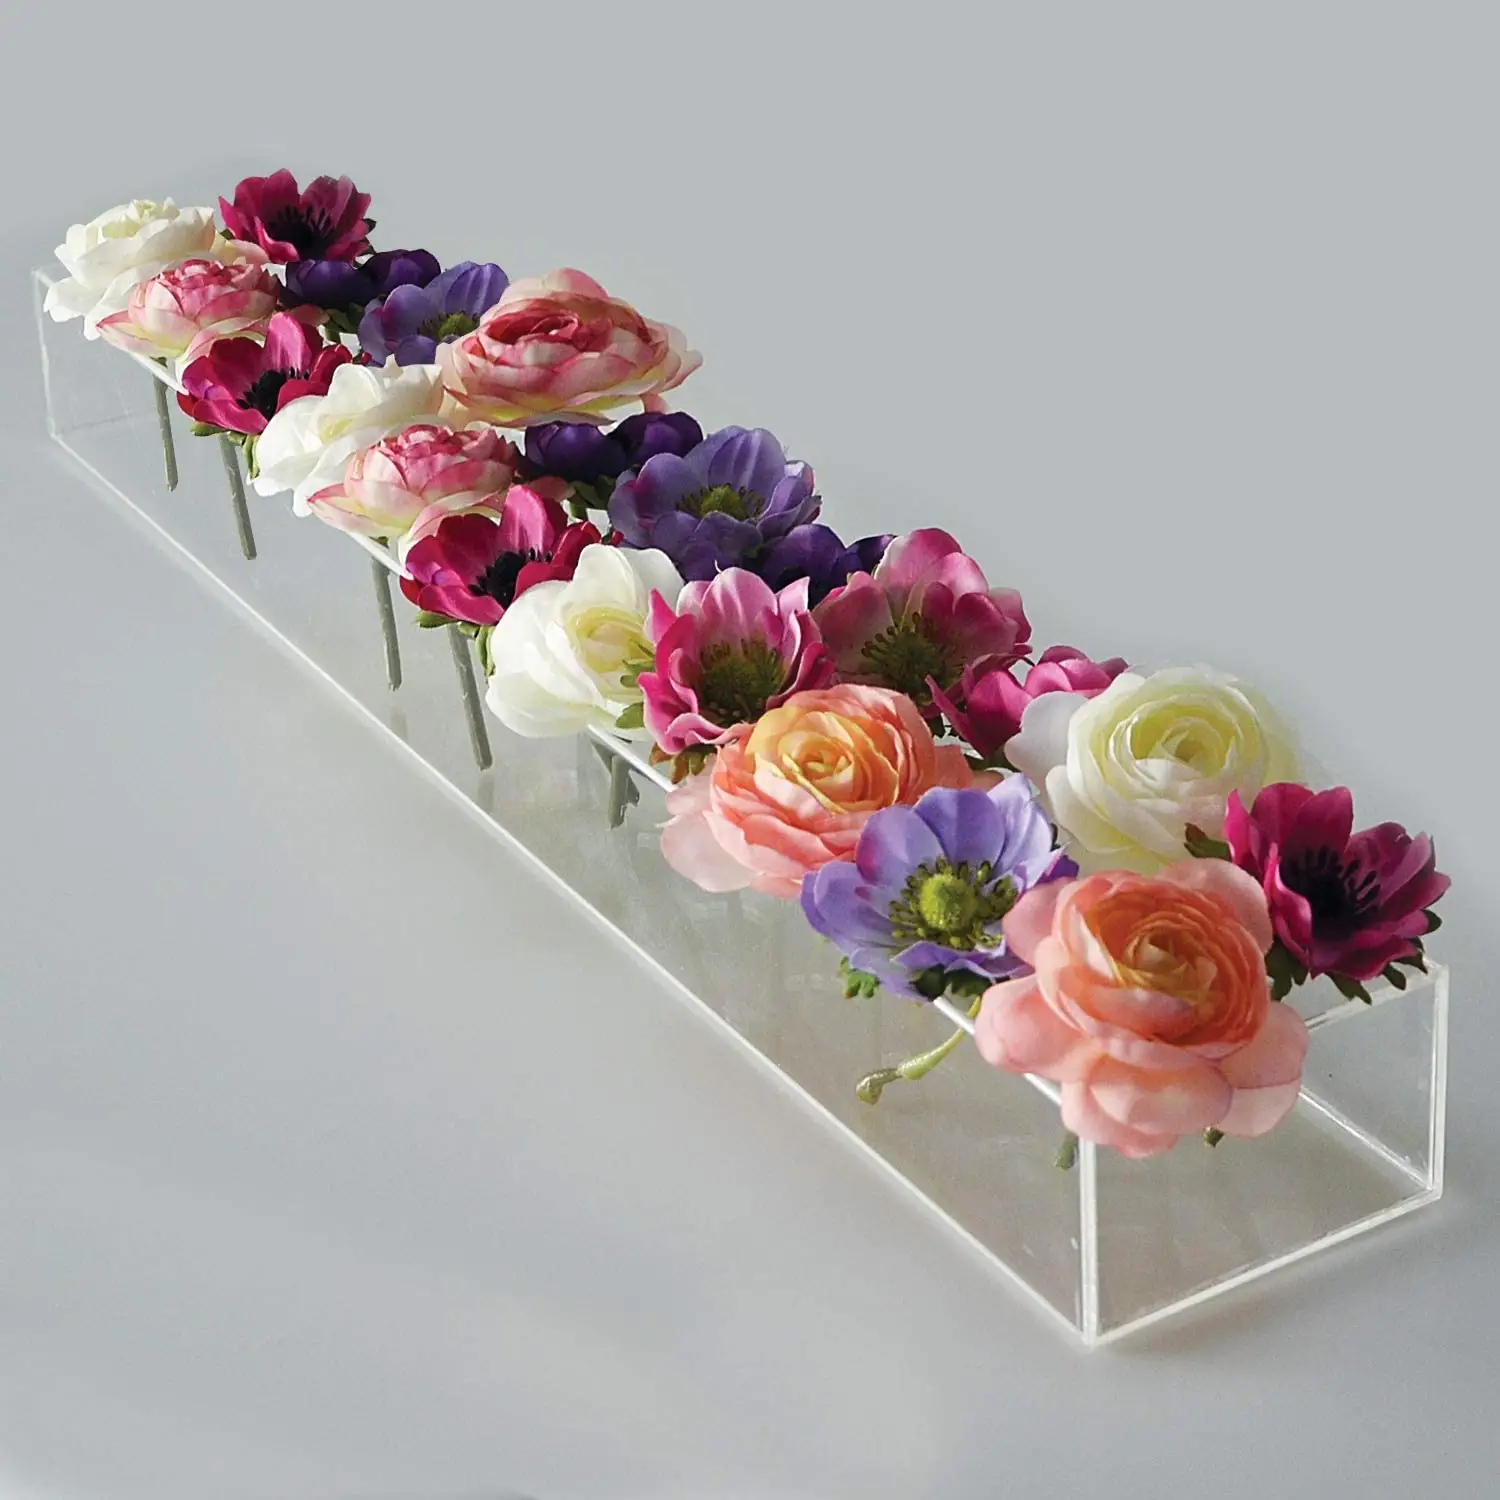 Kunden spezifisch Acryl vase für Hochzeiten Blumen rechteckige Heim dekoration Acryl transparente Vase